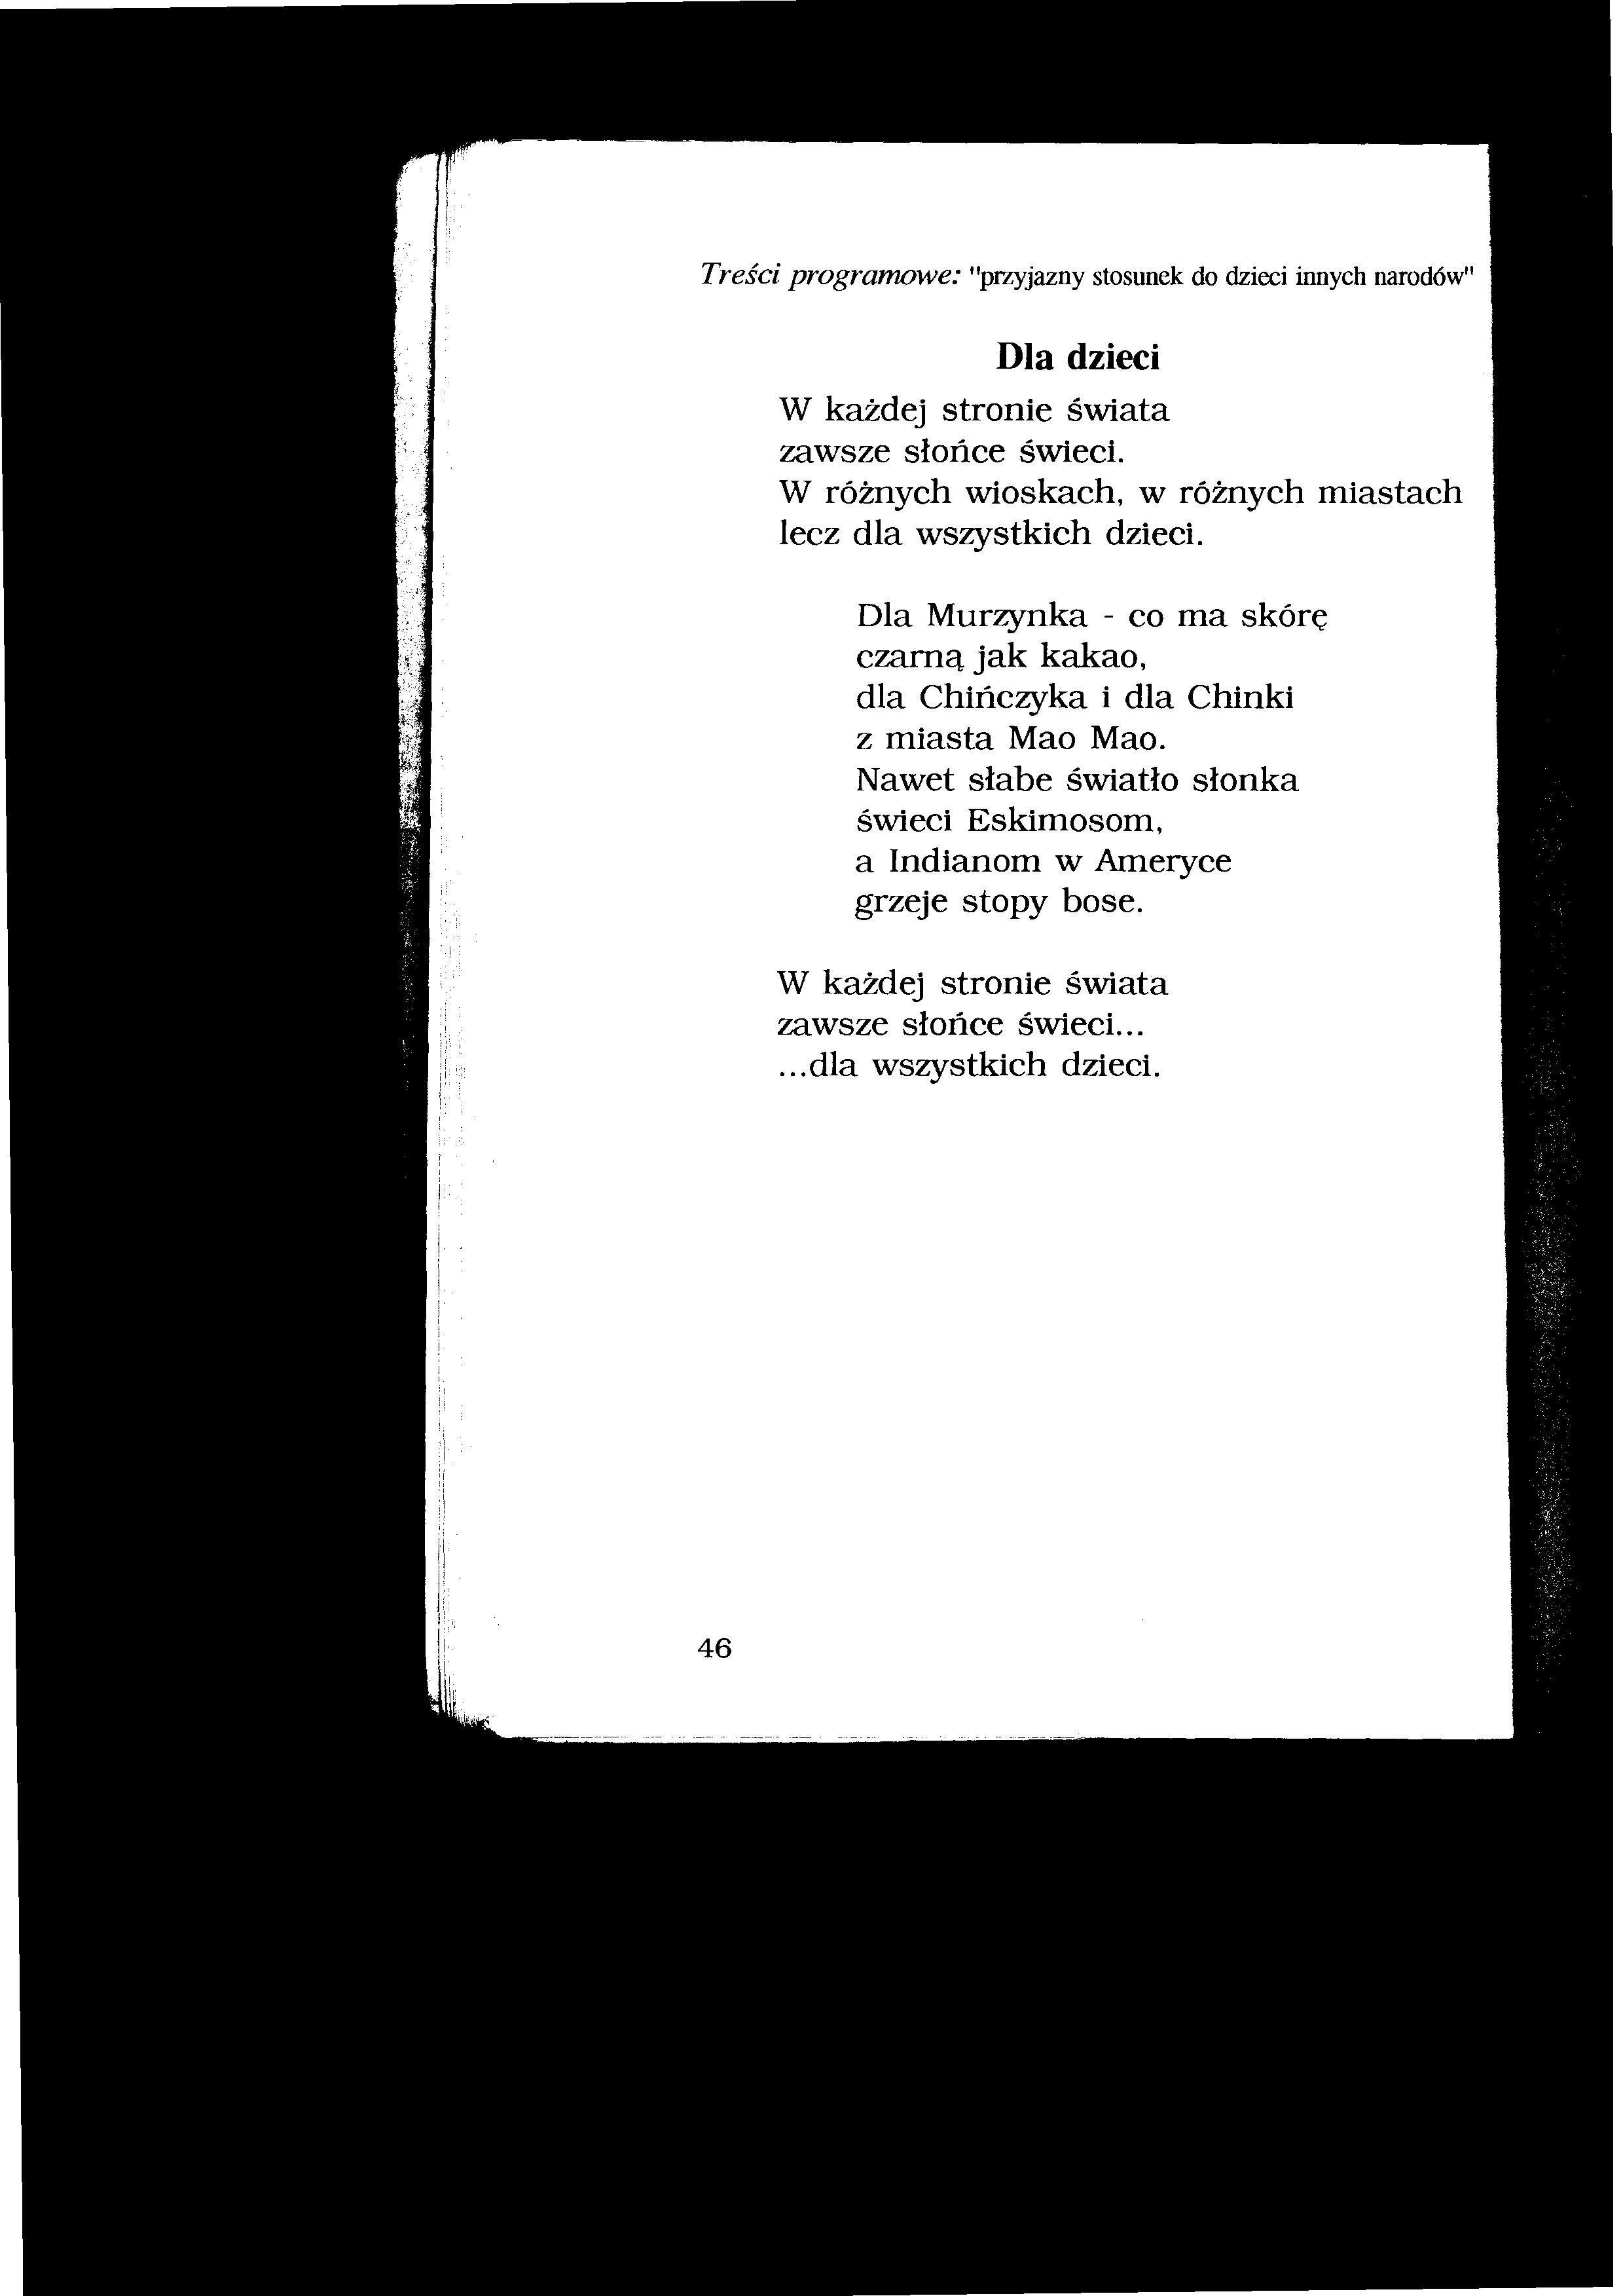 wiersze dla dzieci - I.Salach - Pięciolatki 46.tif